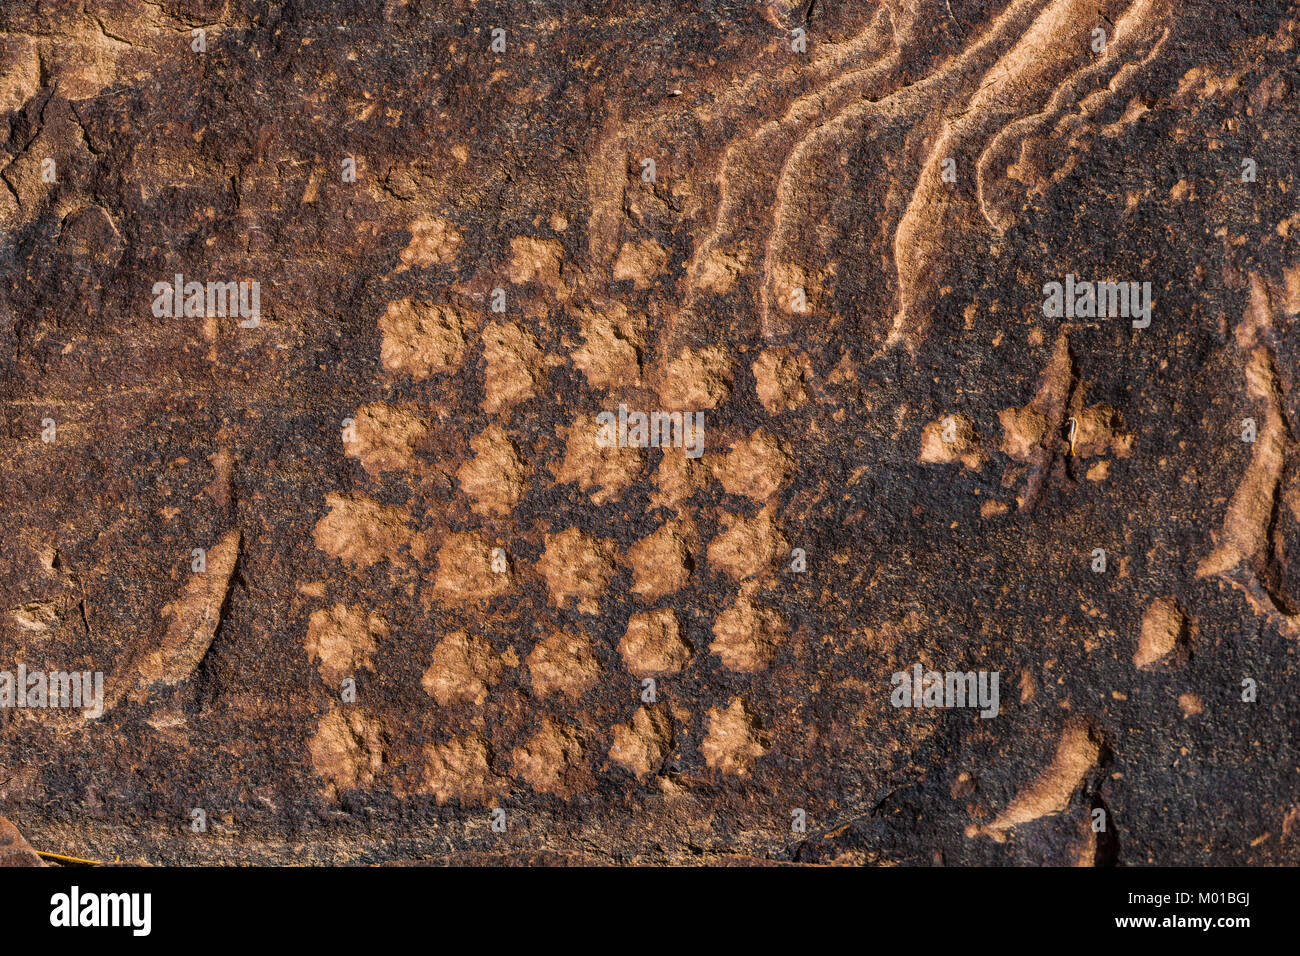 Un résumé de Petroglyph grille de points symboliques de l'inconnaissable peut-être sens créé par une culture ancienne à Canyonlands, Utah, USA Banque D'Images